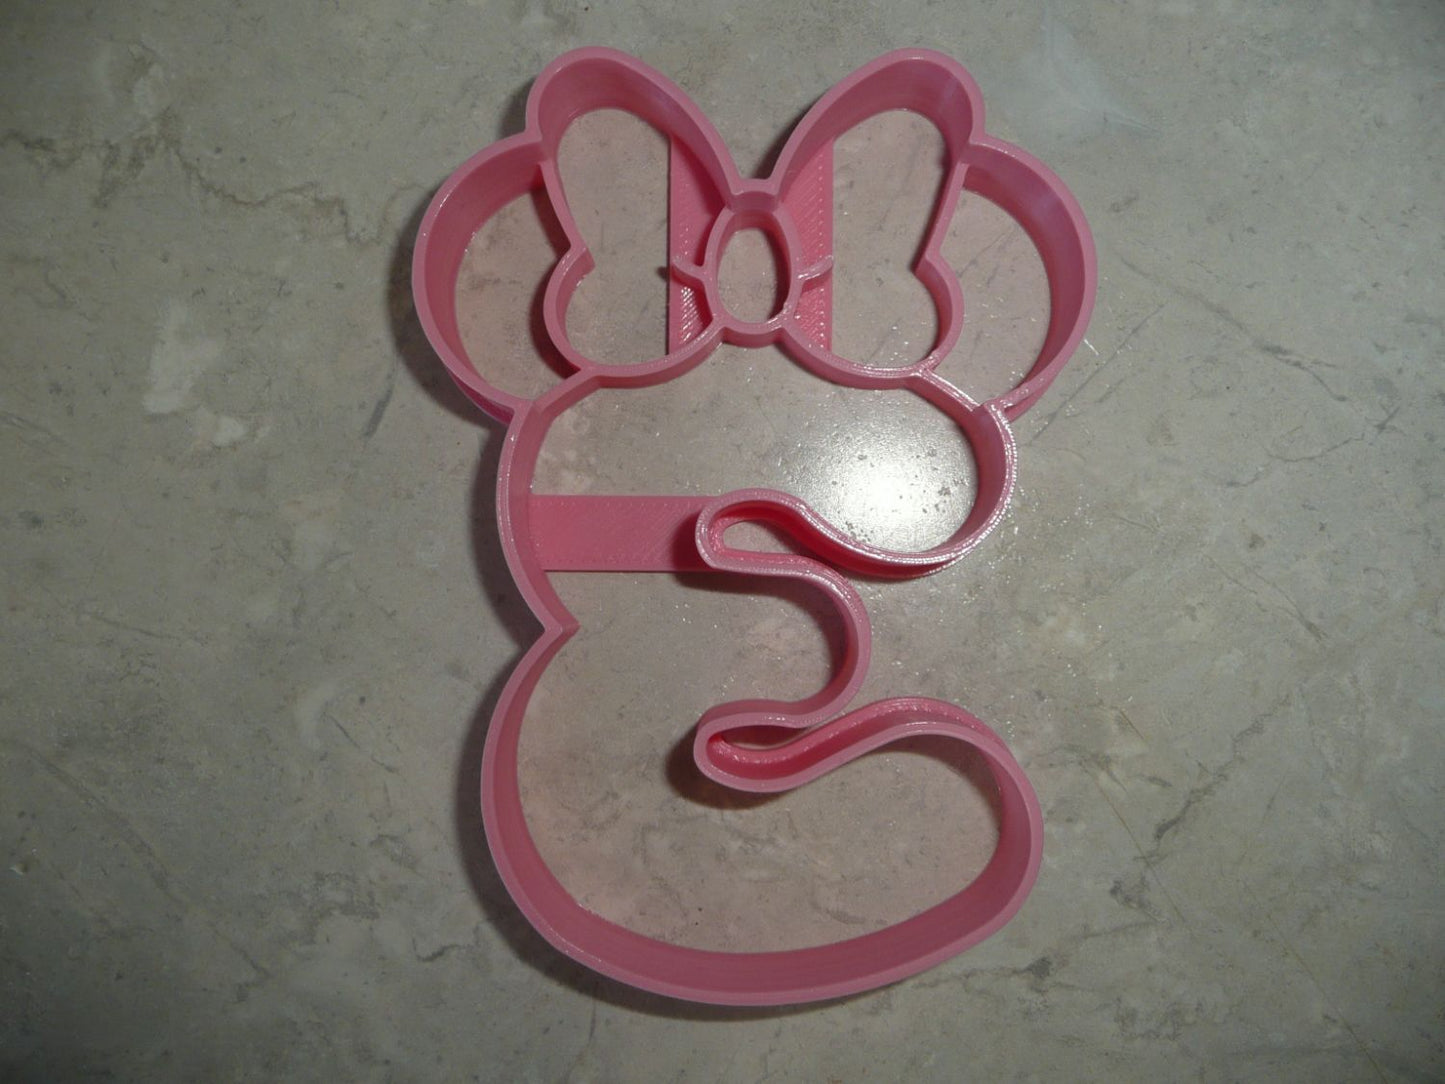 6x Minnie Detail Number 3 Fondant Cutter Cupcake Topper 1.75 IN USA FD4553